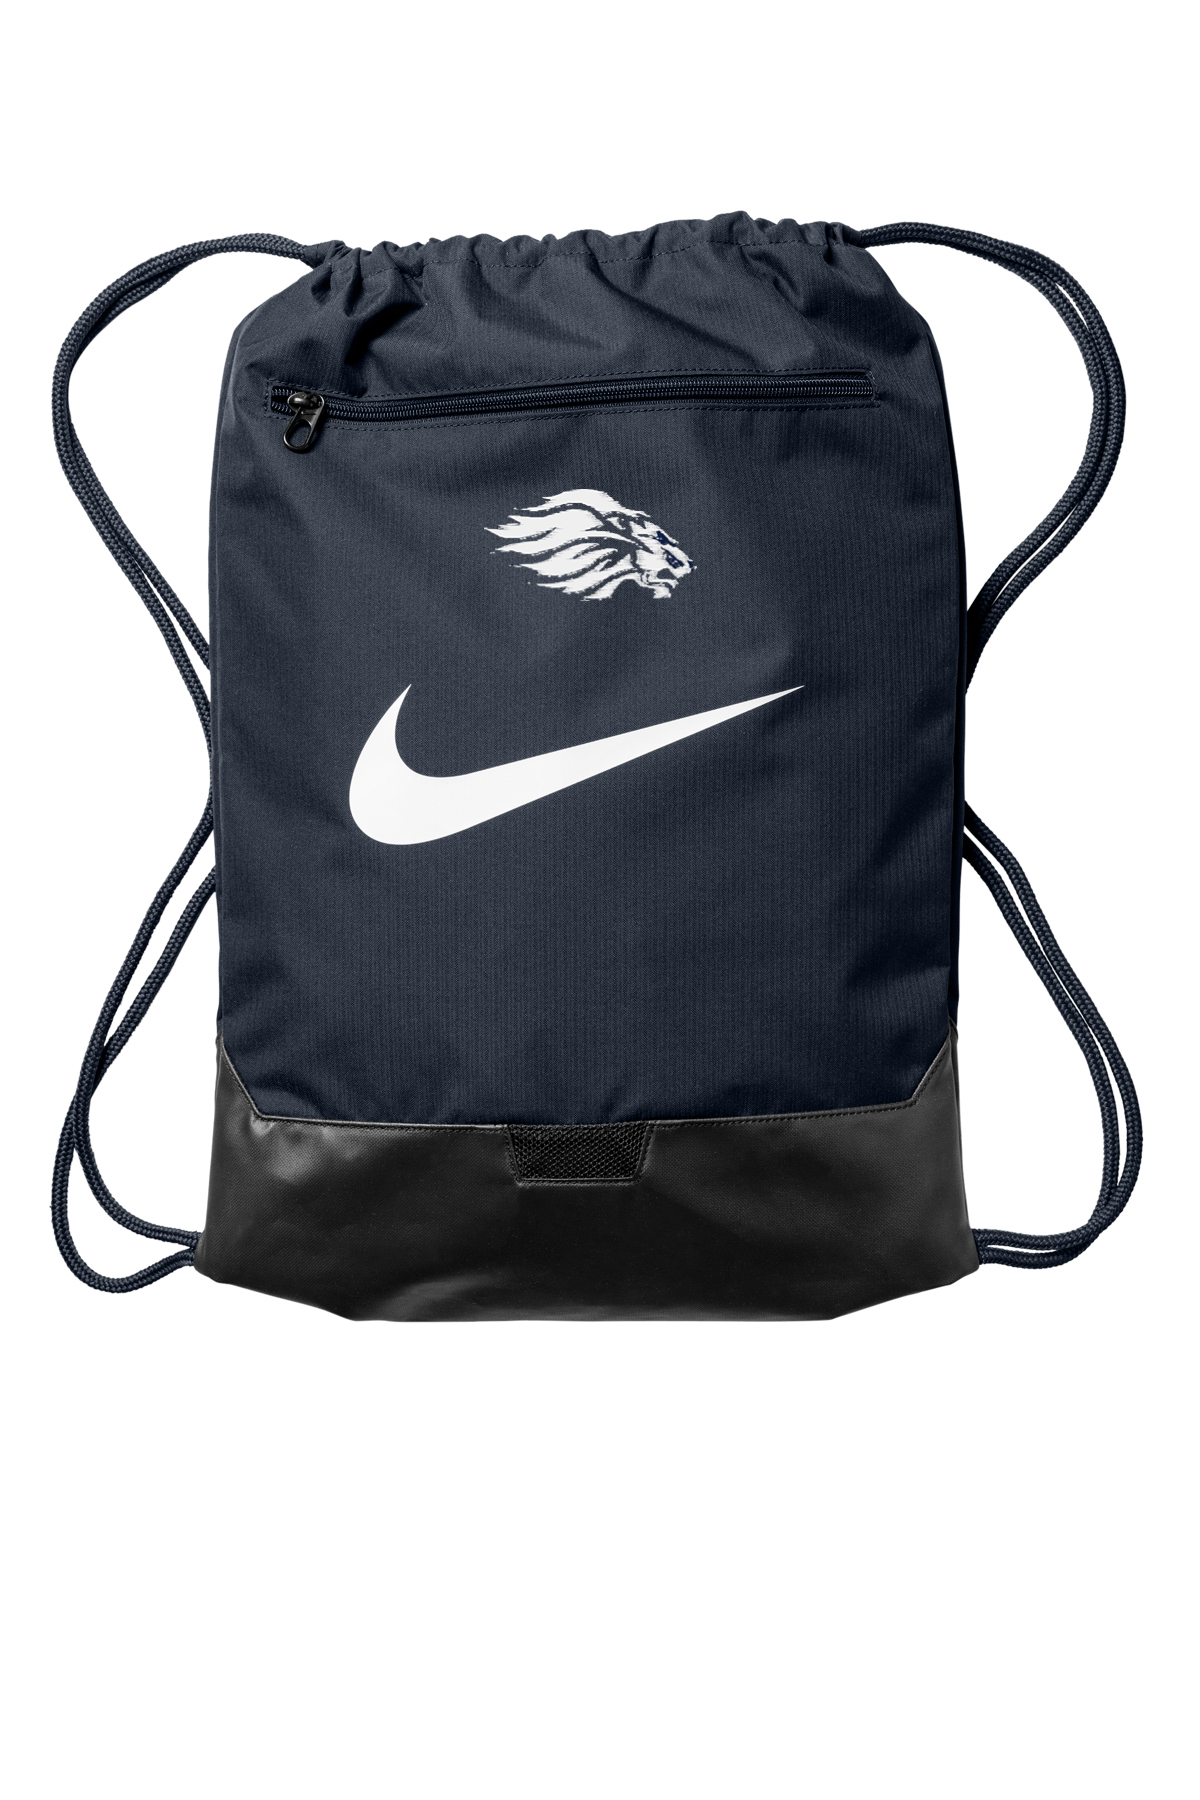 CCCS Lion Nike Brasilia Drawstring Pack